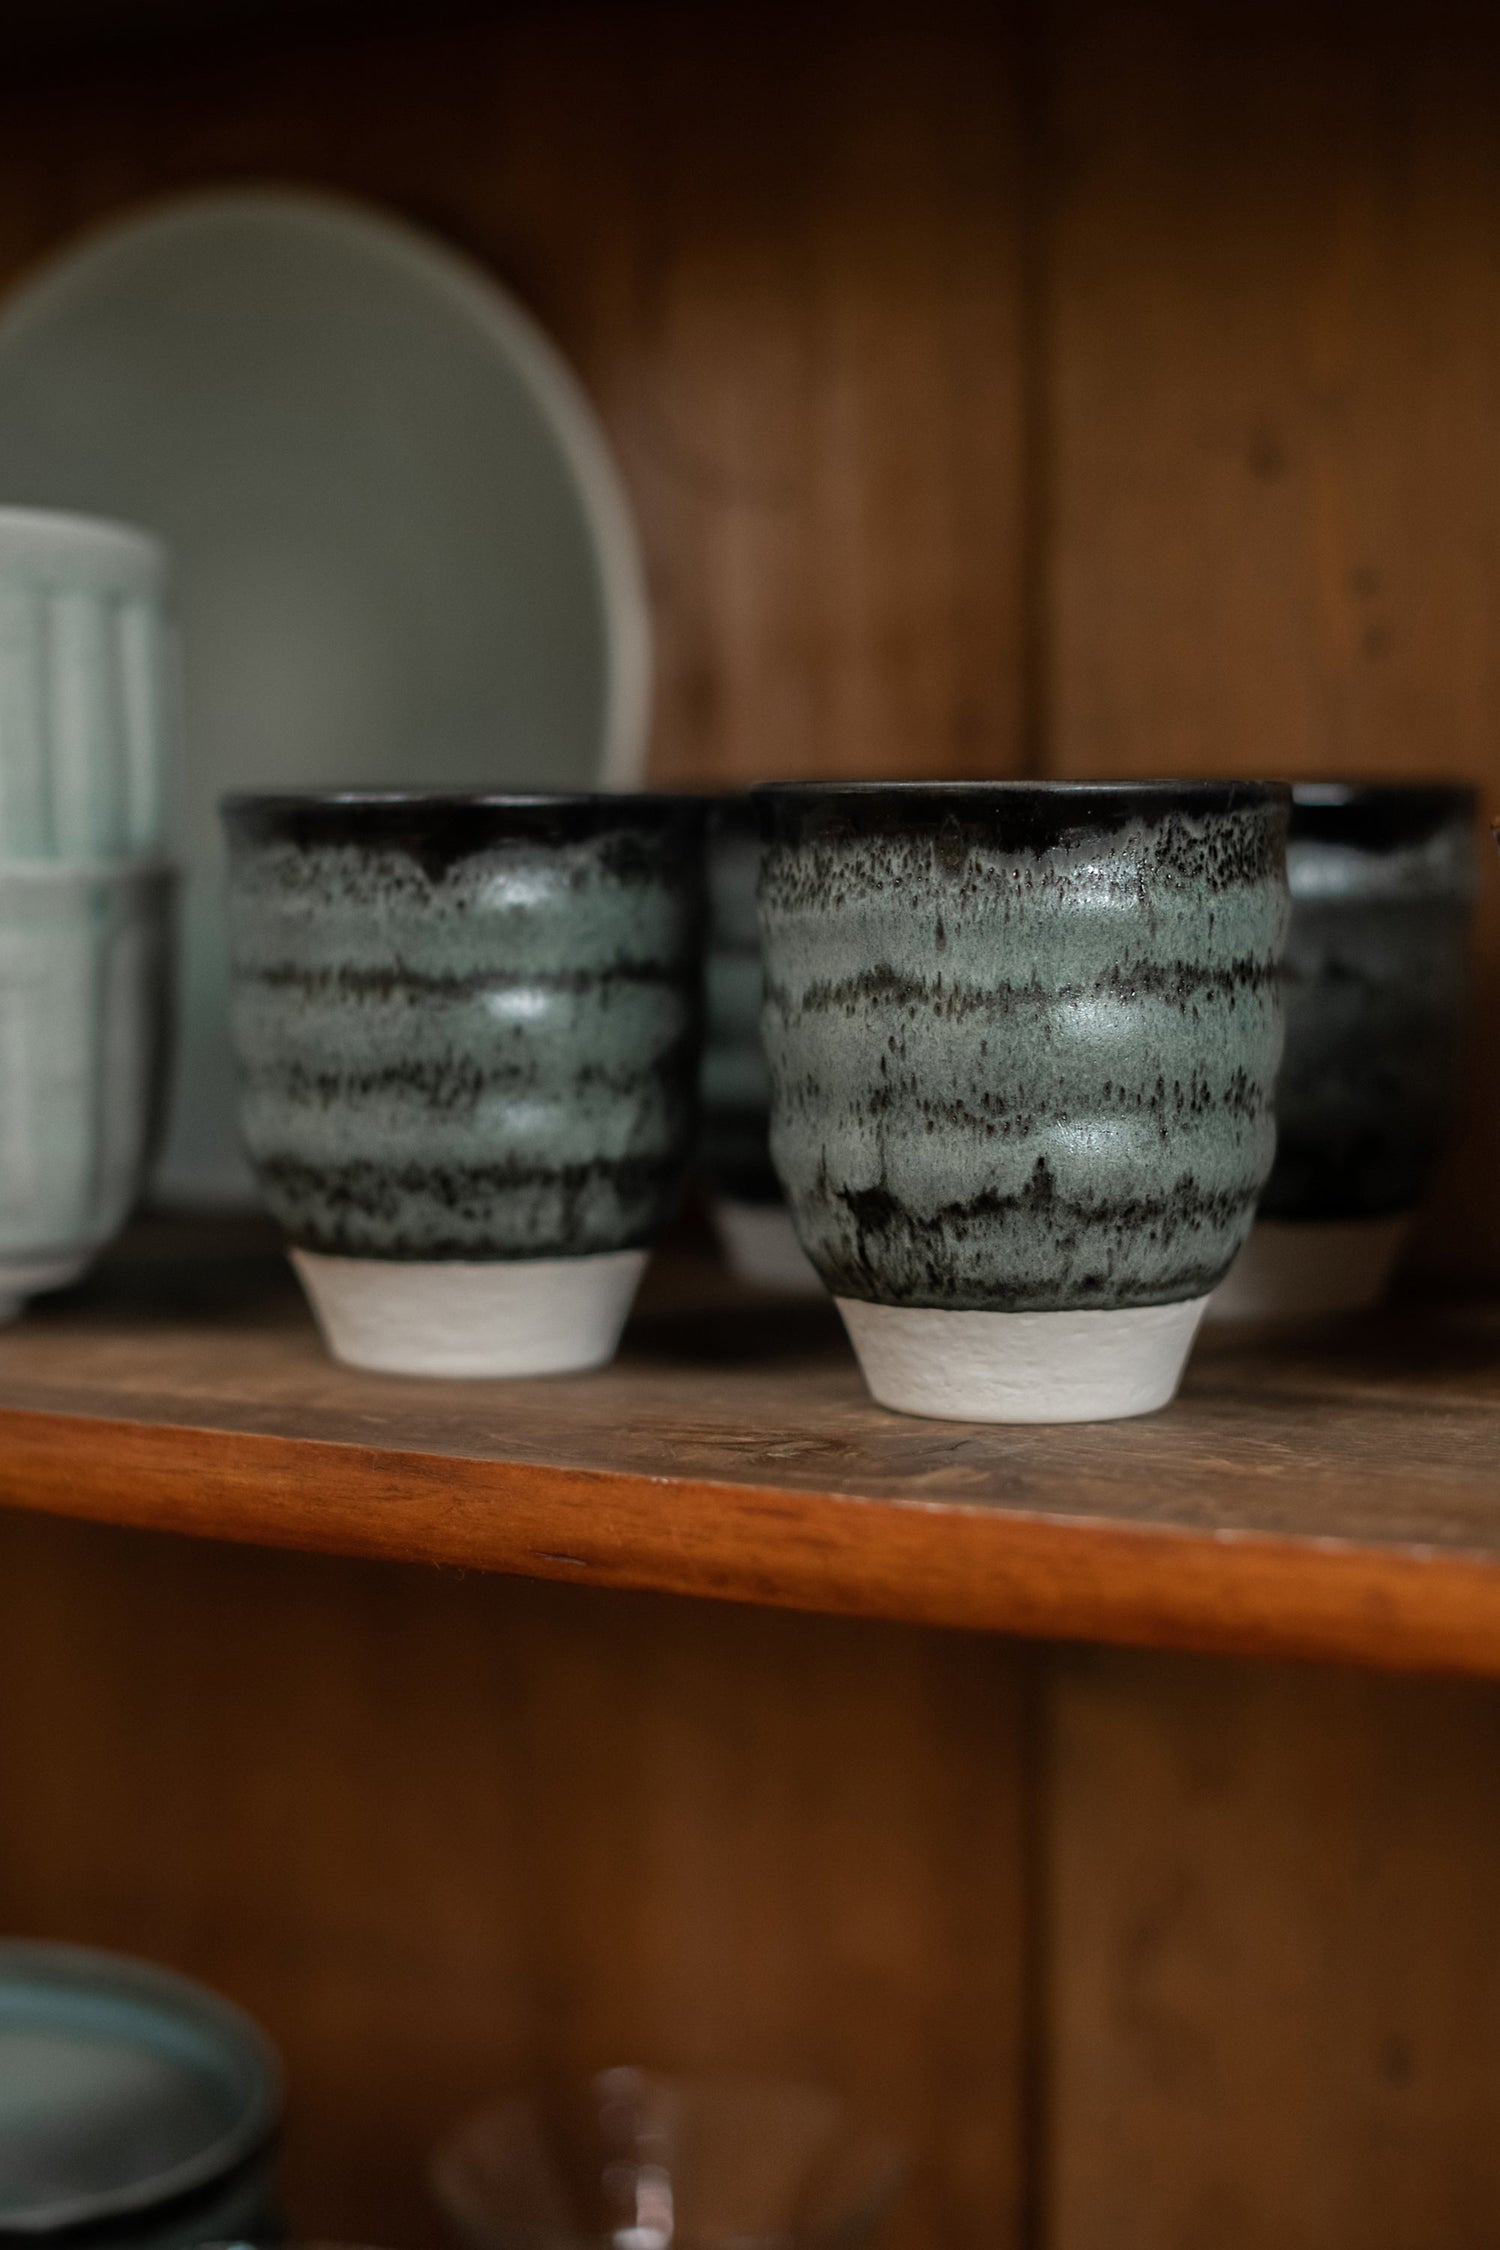 Ceramic mugs tumblers in a cupboard.